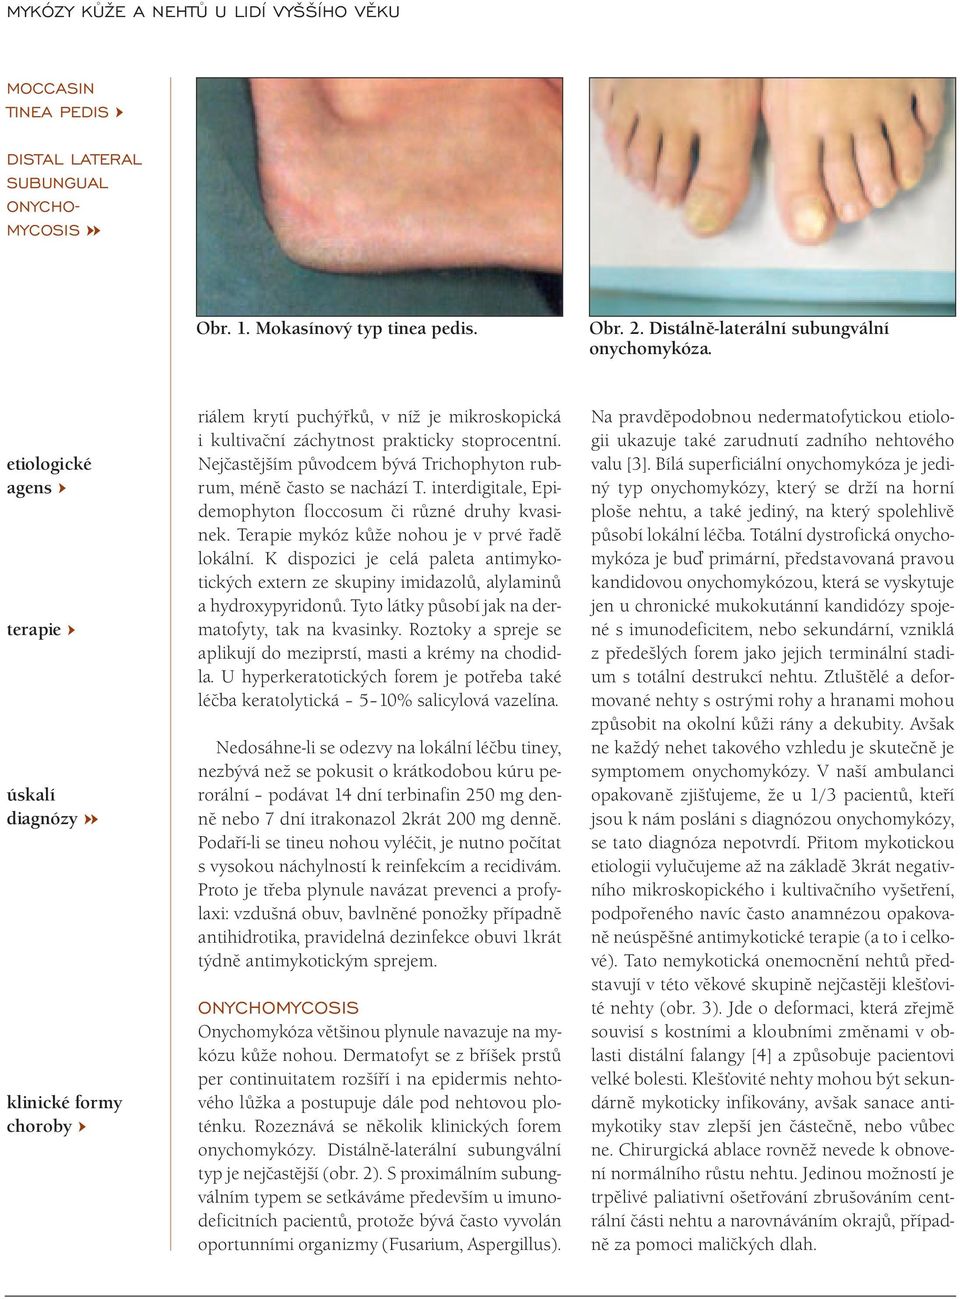 Nejčastějším původcem bývá Trichophyton rubrum, méně často se nachází T. interdigitale, Epidemophyton floccosum či různé druhy kvasinek. Terapie mykóz kůže nohou je v prvé řadě lokální.